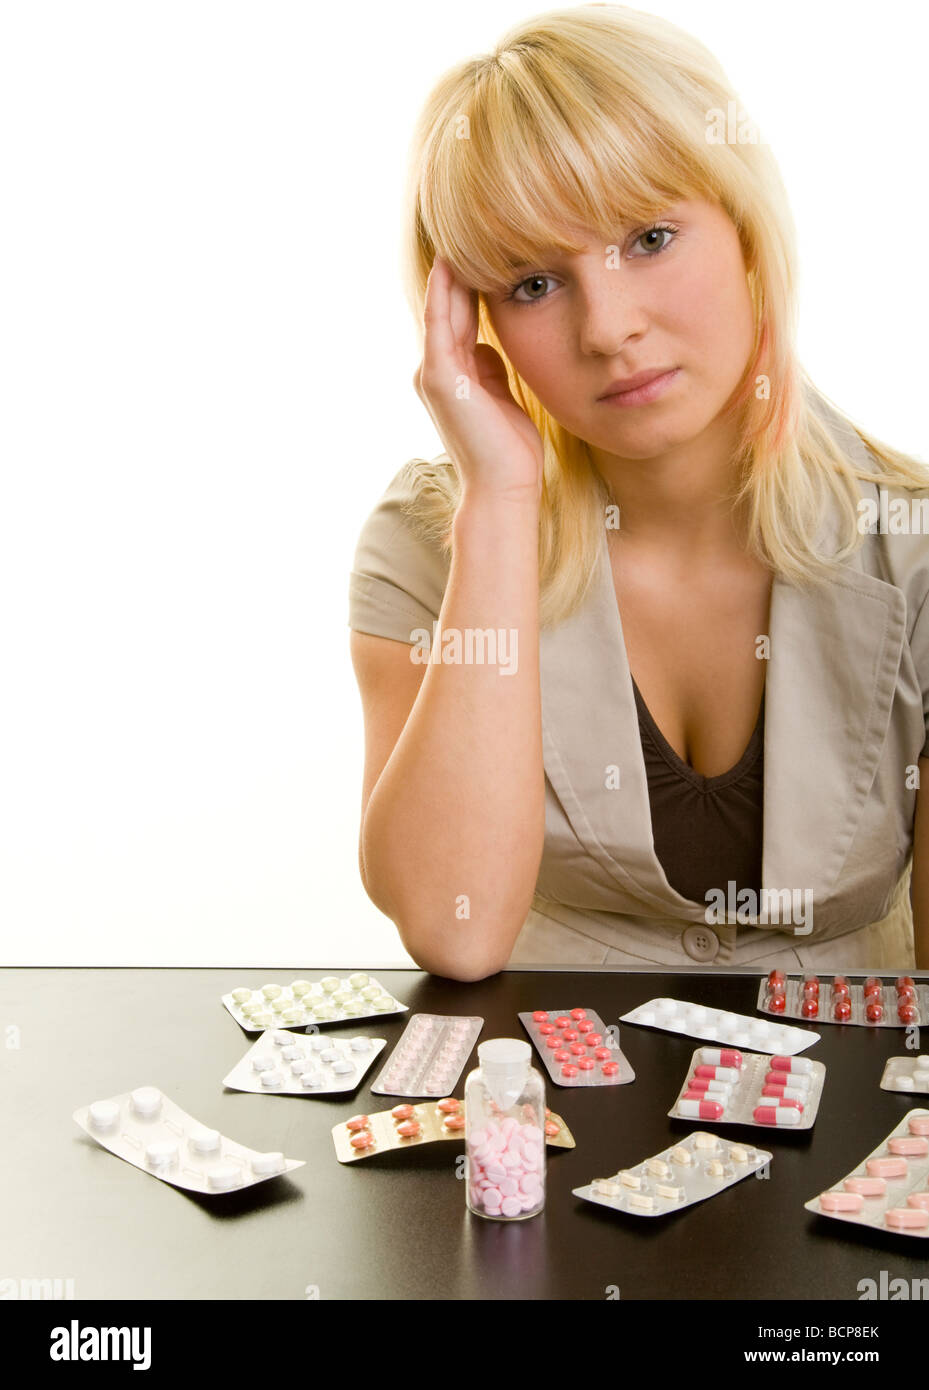 Junge Frau mit Kopfschmerzen sitzt un einem Tisch mit vielen Arzneimitteln Foto Stock